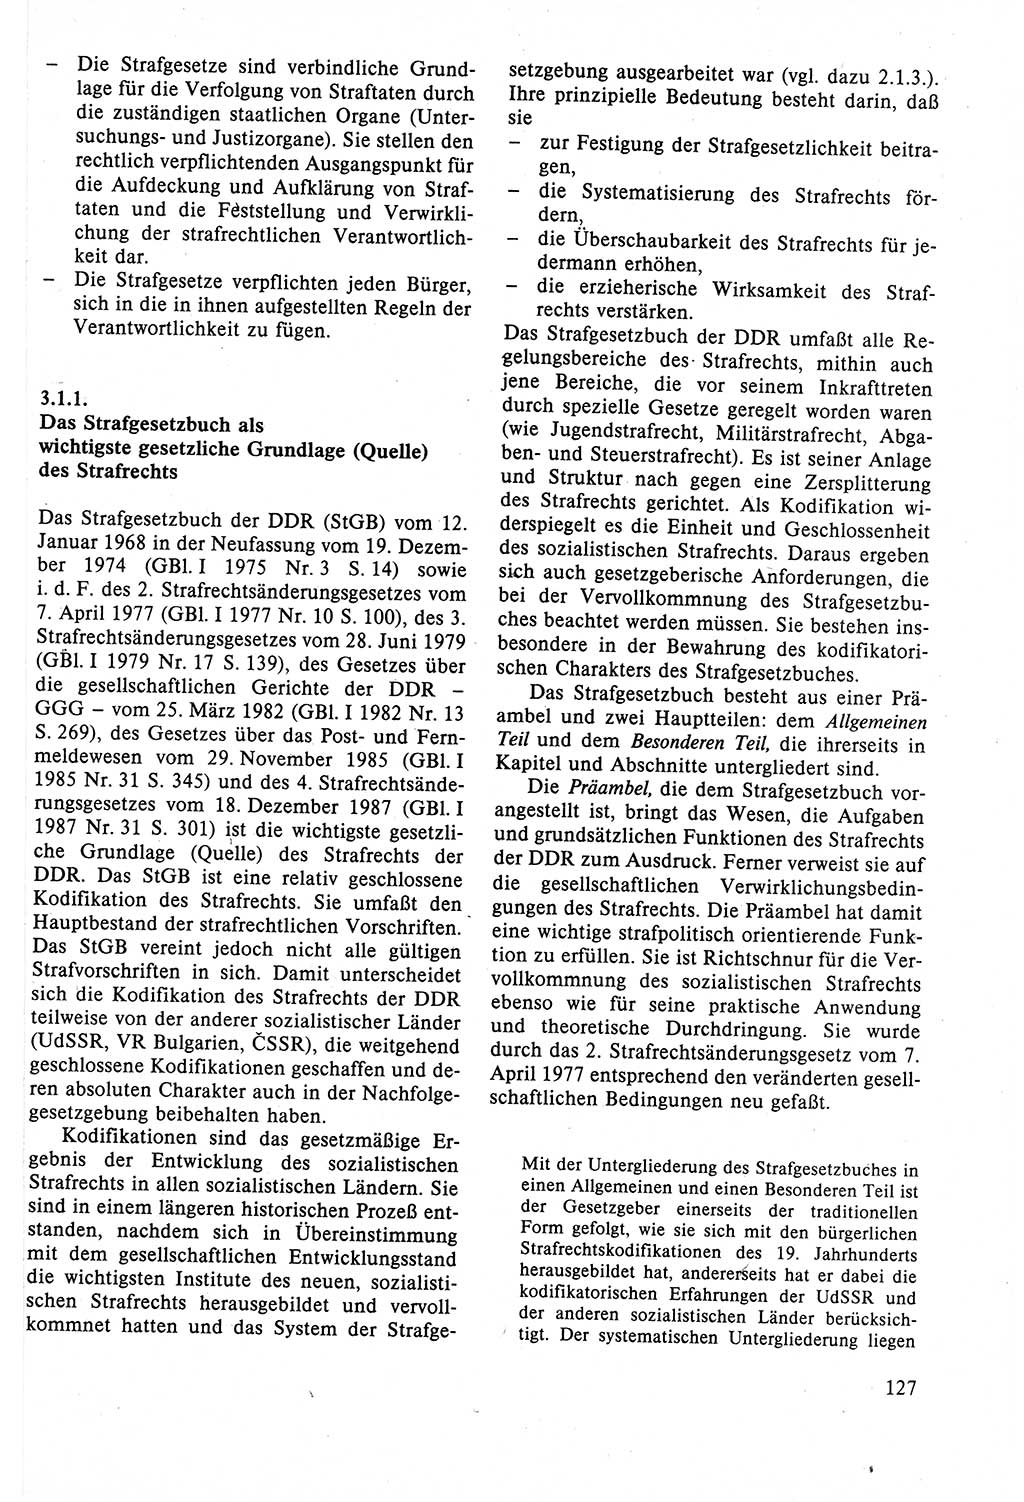 Strafrecht der DDR (Deutsche Demokratische Republik), Lehrbuch 1988, Seite 127 (Strafr. DDR Lb. 1988, S. 127)